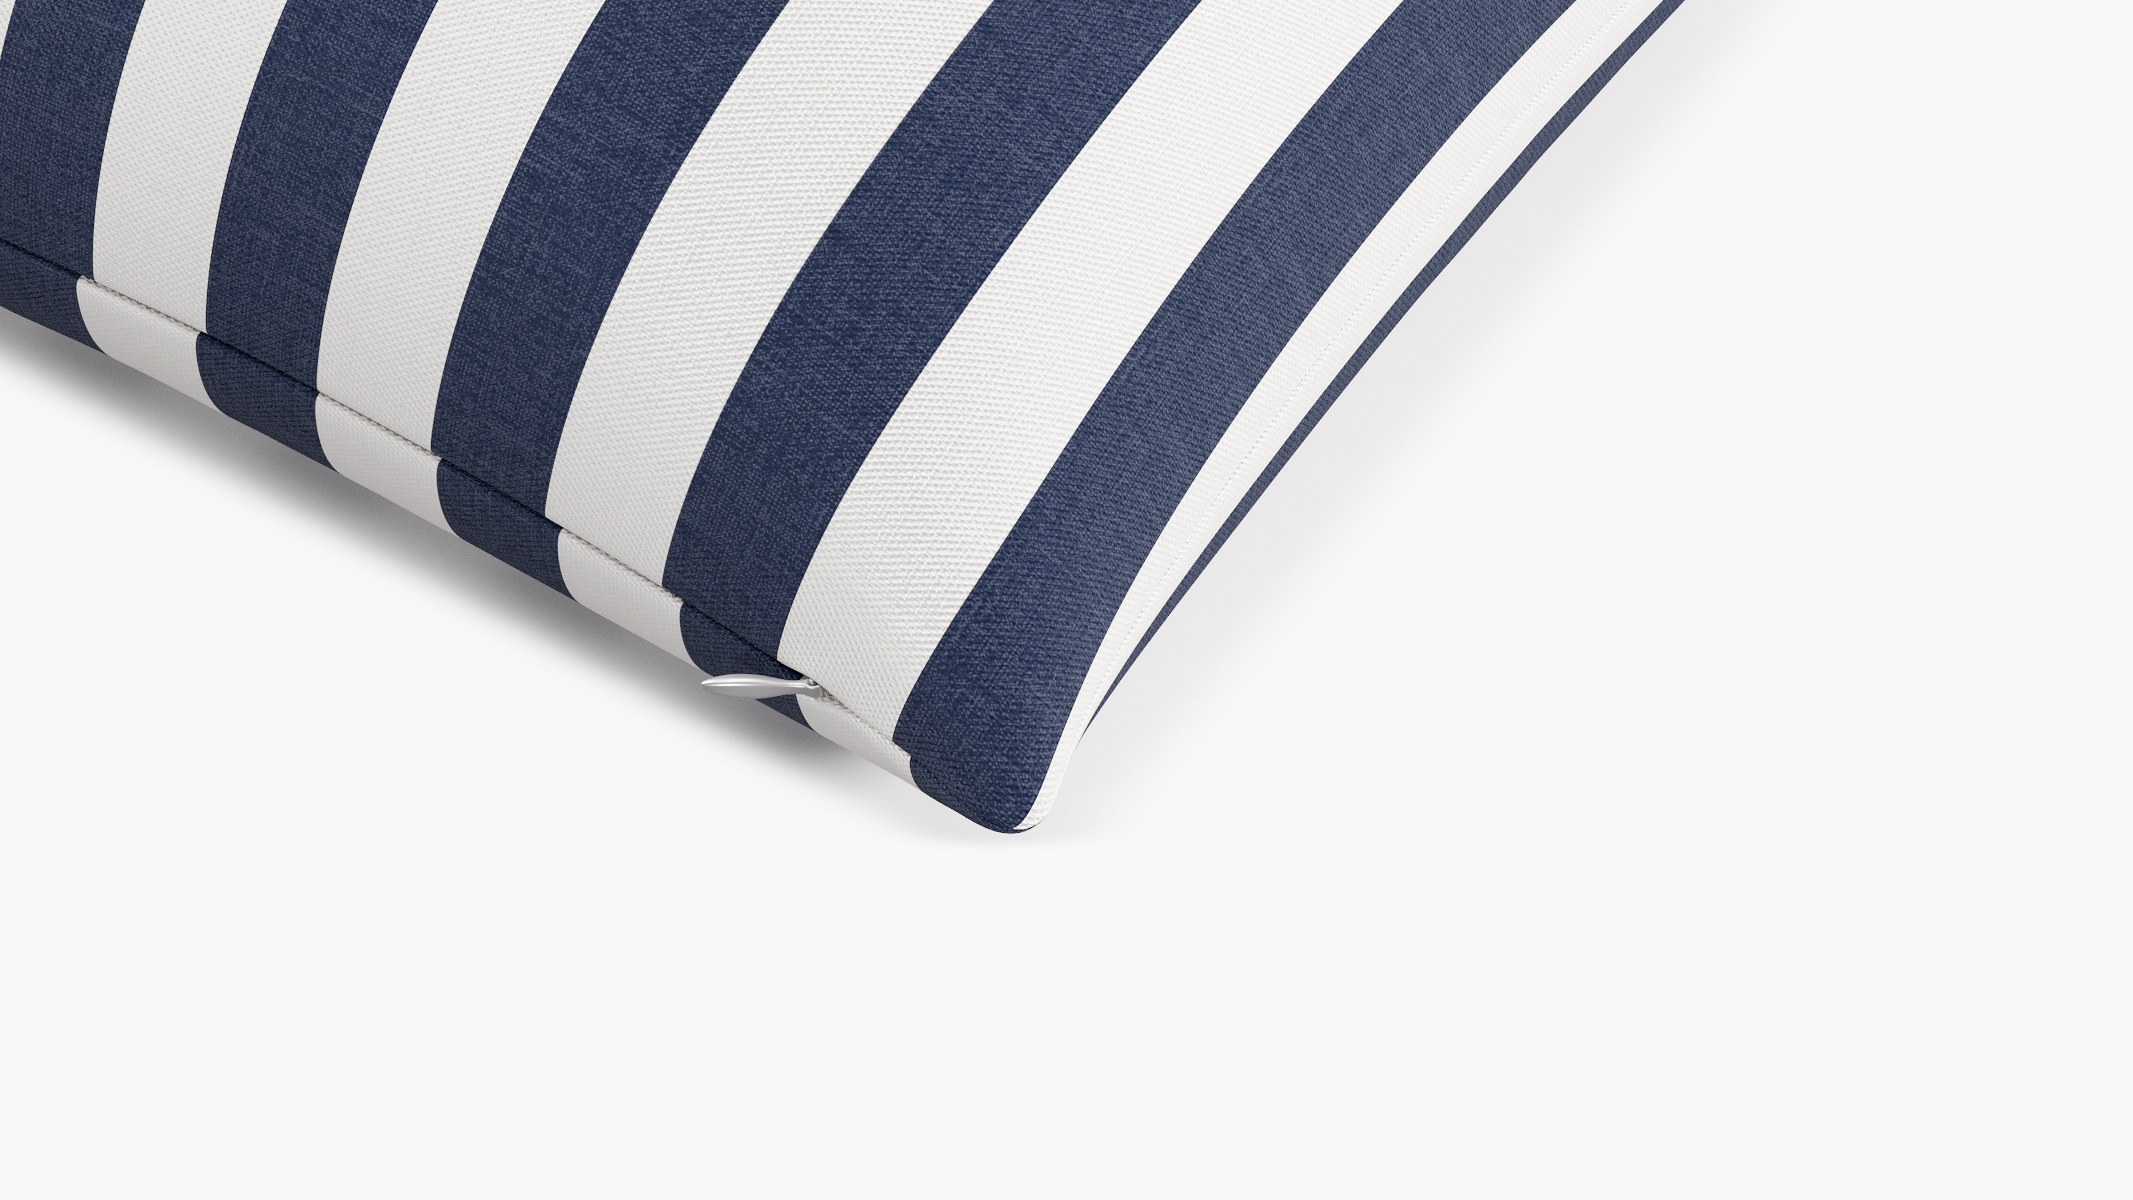 Throw Pillow 20", Navy Cabana Stripe, 20" x 20" - Image 1